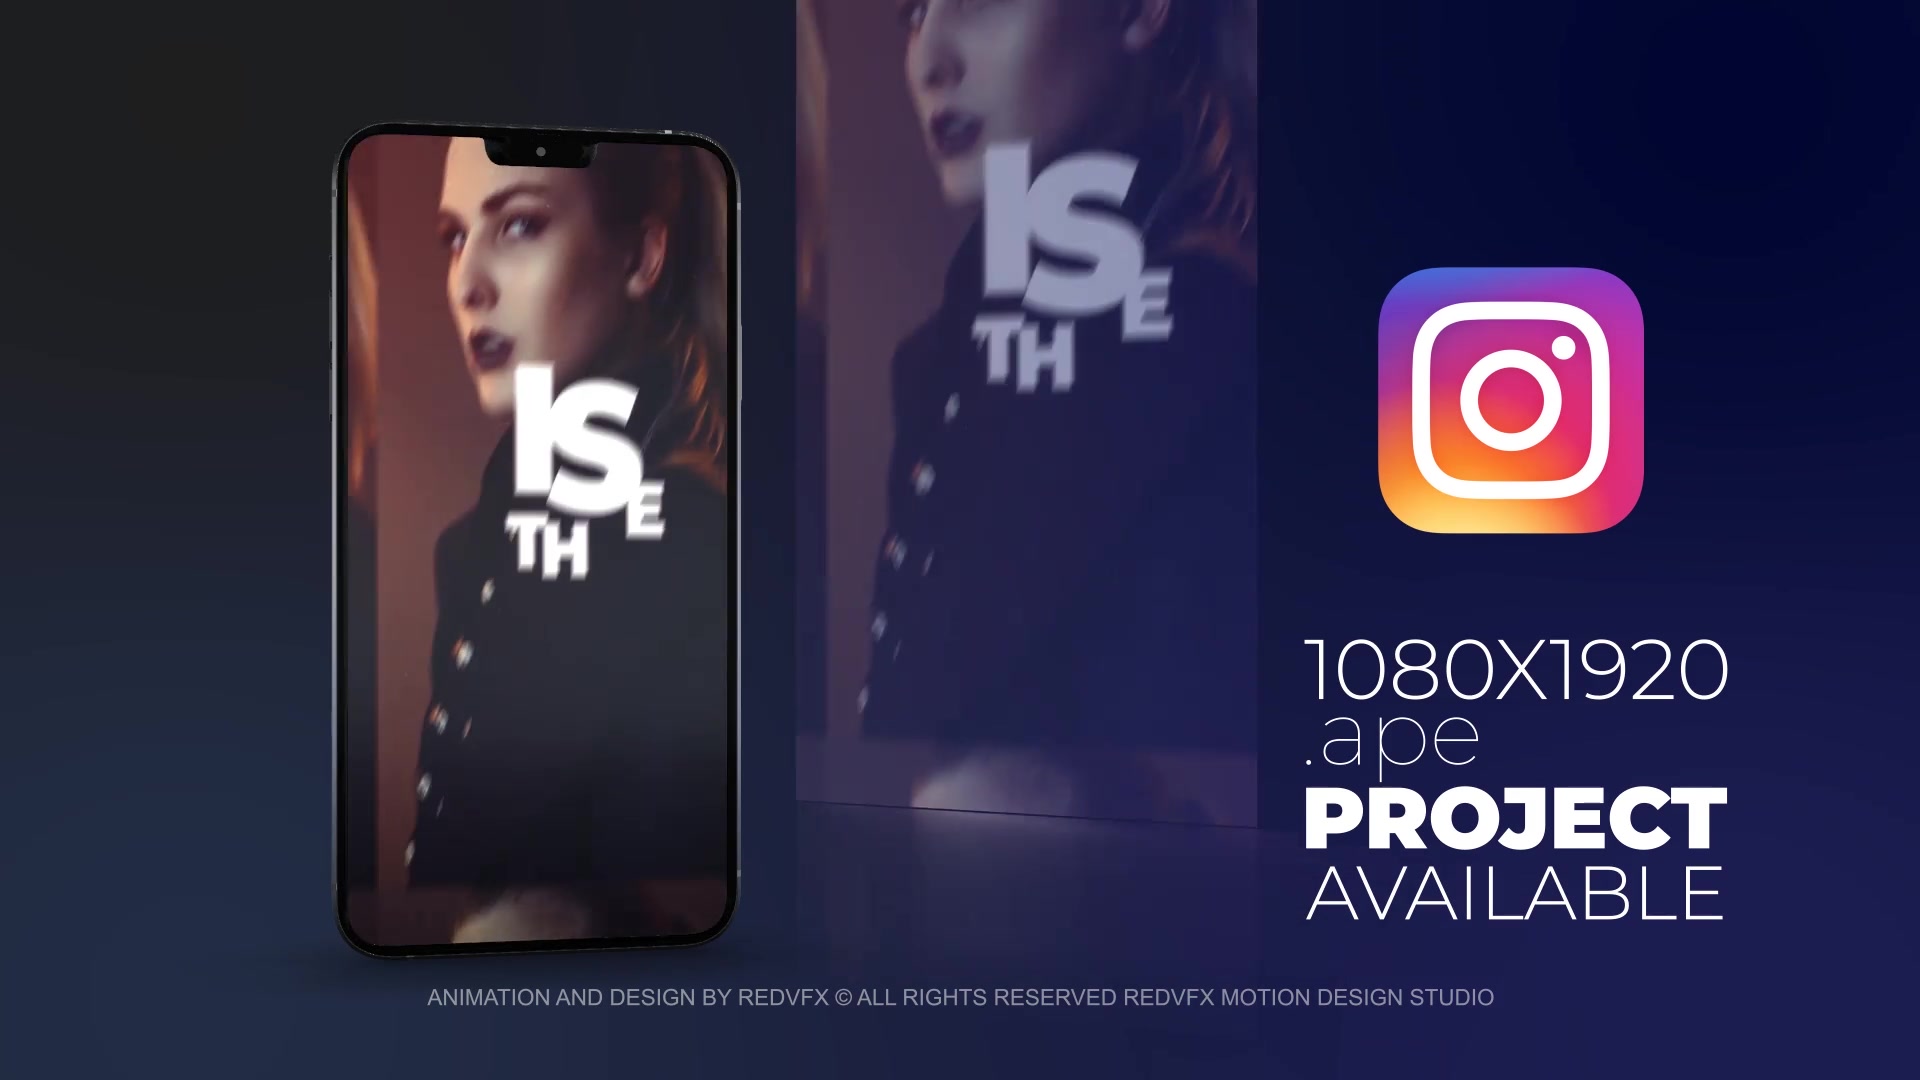 Future Bass Promo for Premiere Pro Videohive 36649506 Premiere Pro Image 8